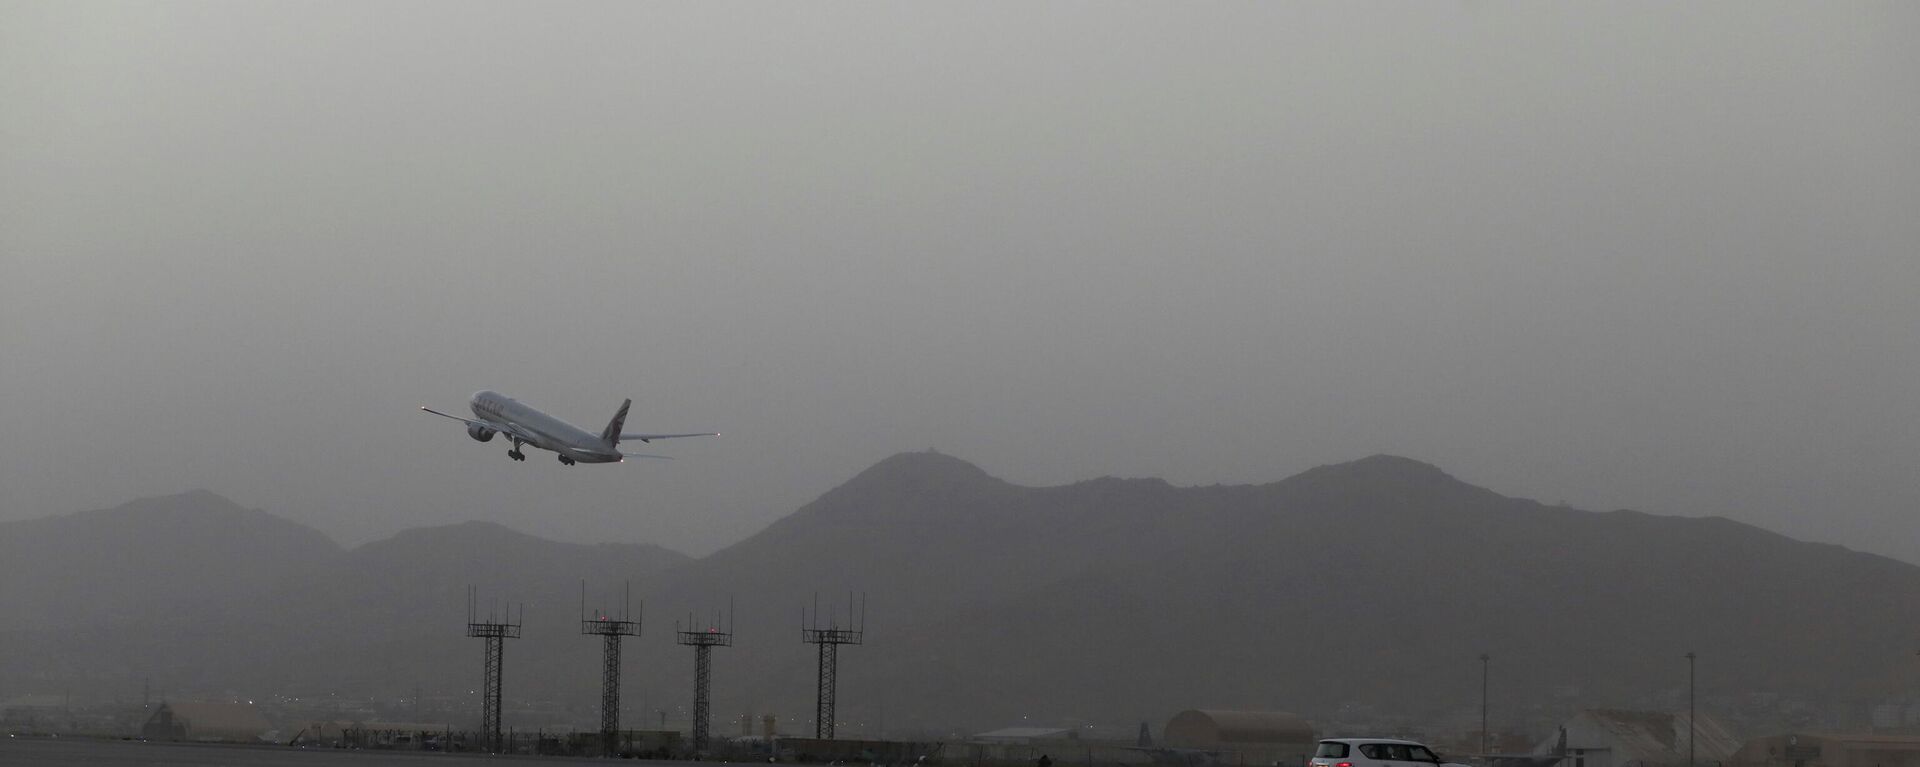 Un avión despega del aeropuerto de Kabul, el 10 de septiembre de 2021 - Sputnik Mundo, 1920, 11.09.2021